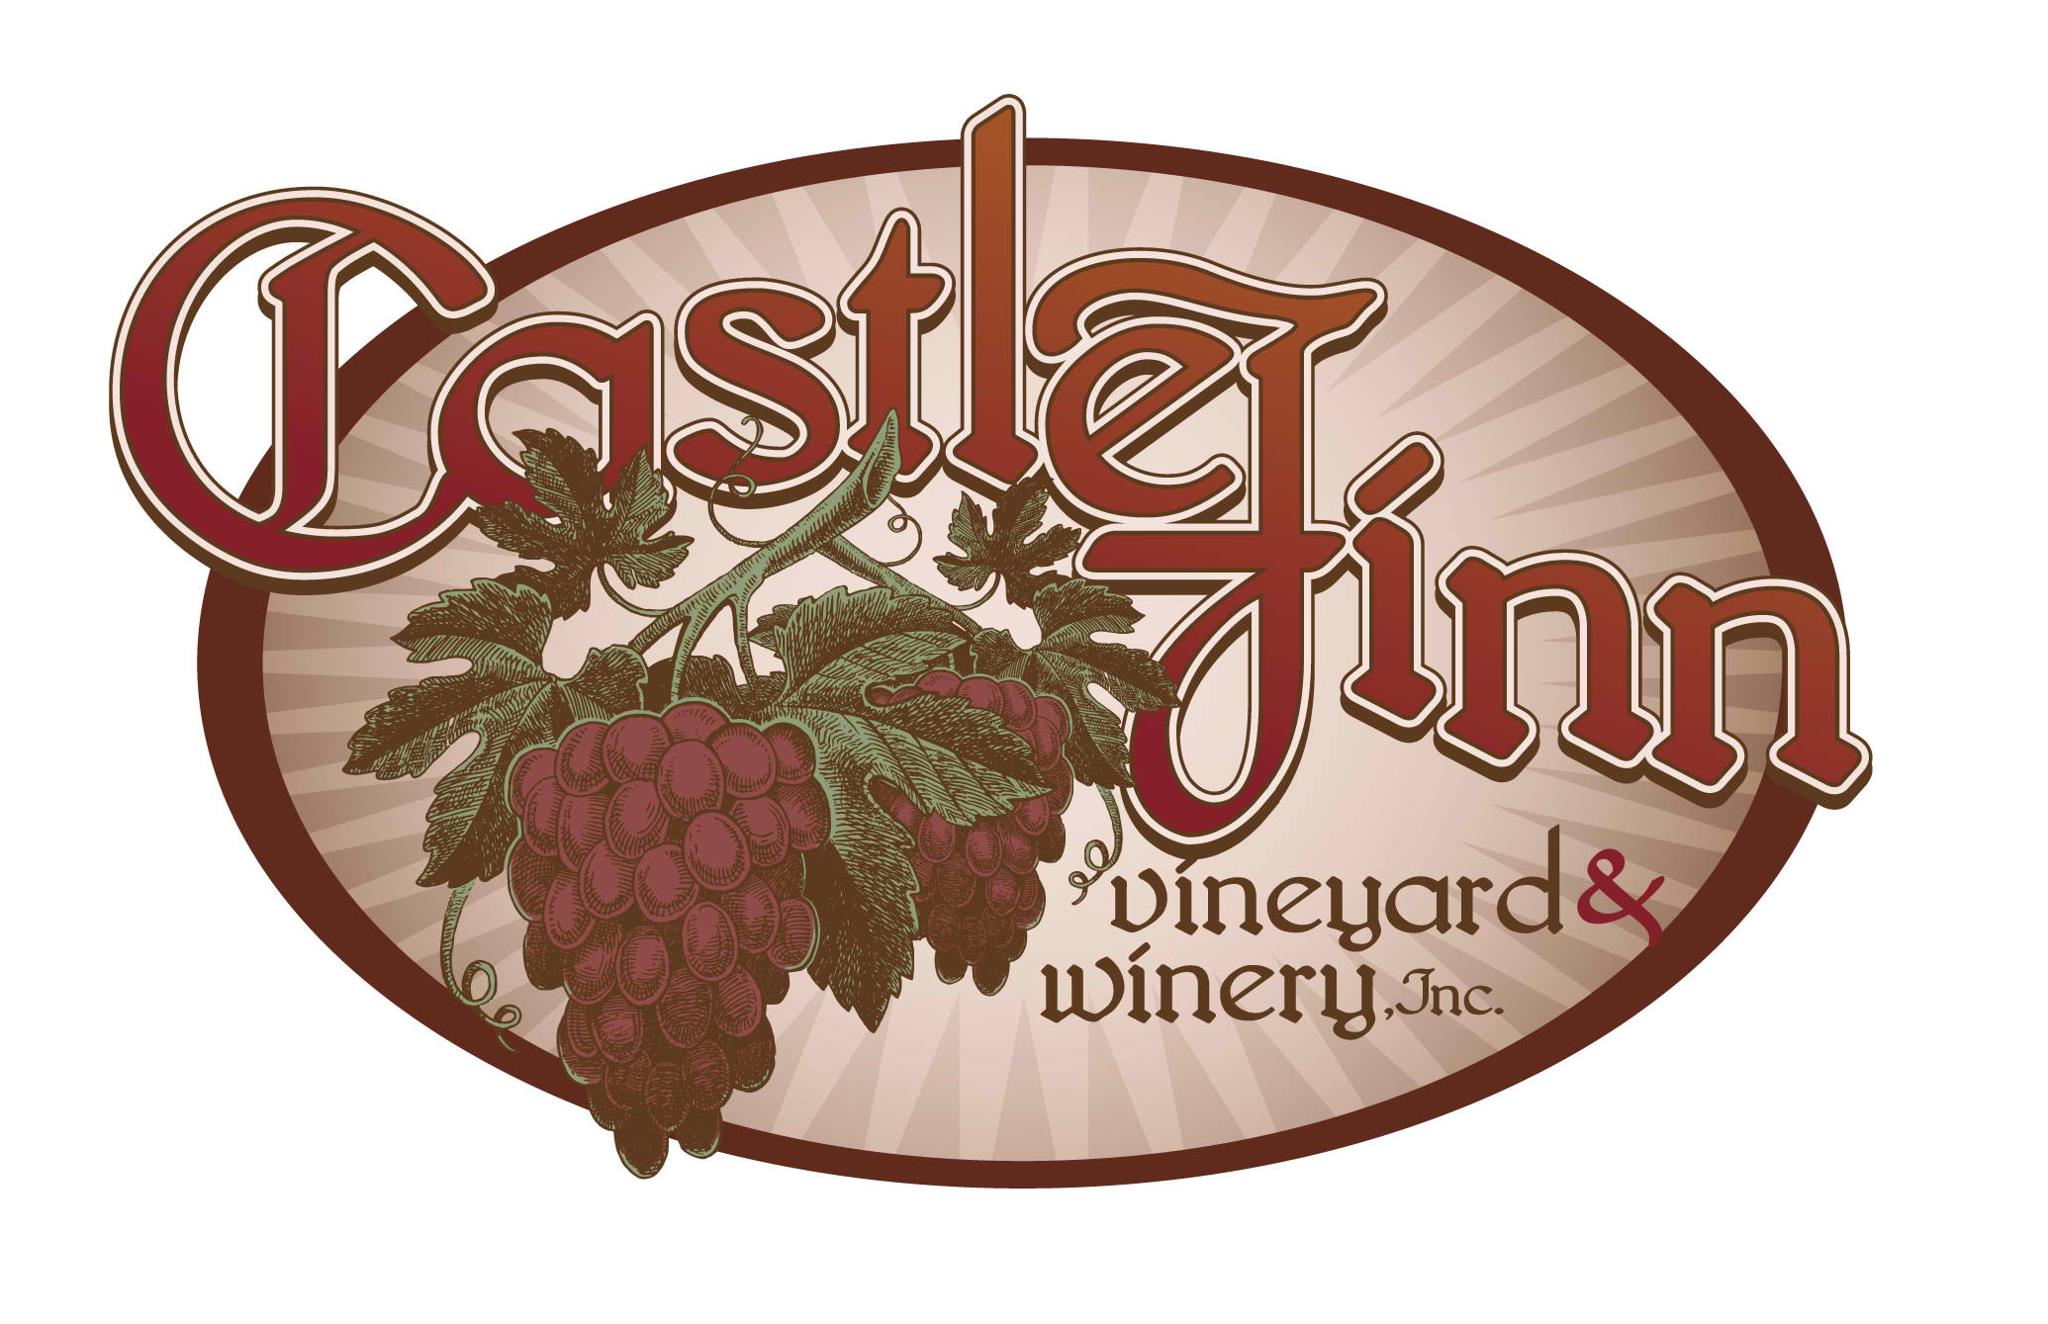 Castle Finn Vineyard & Winery